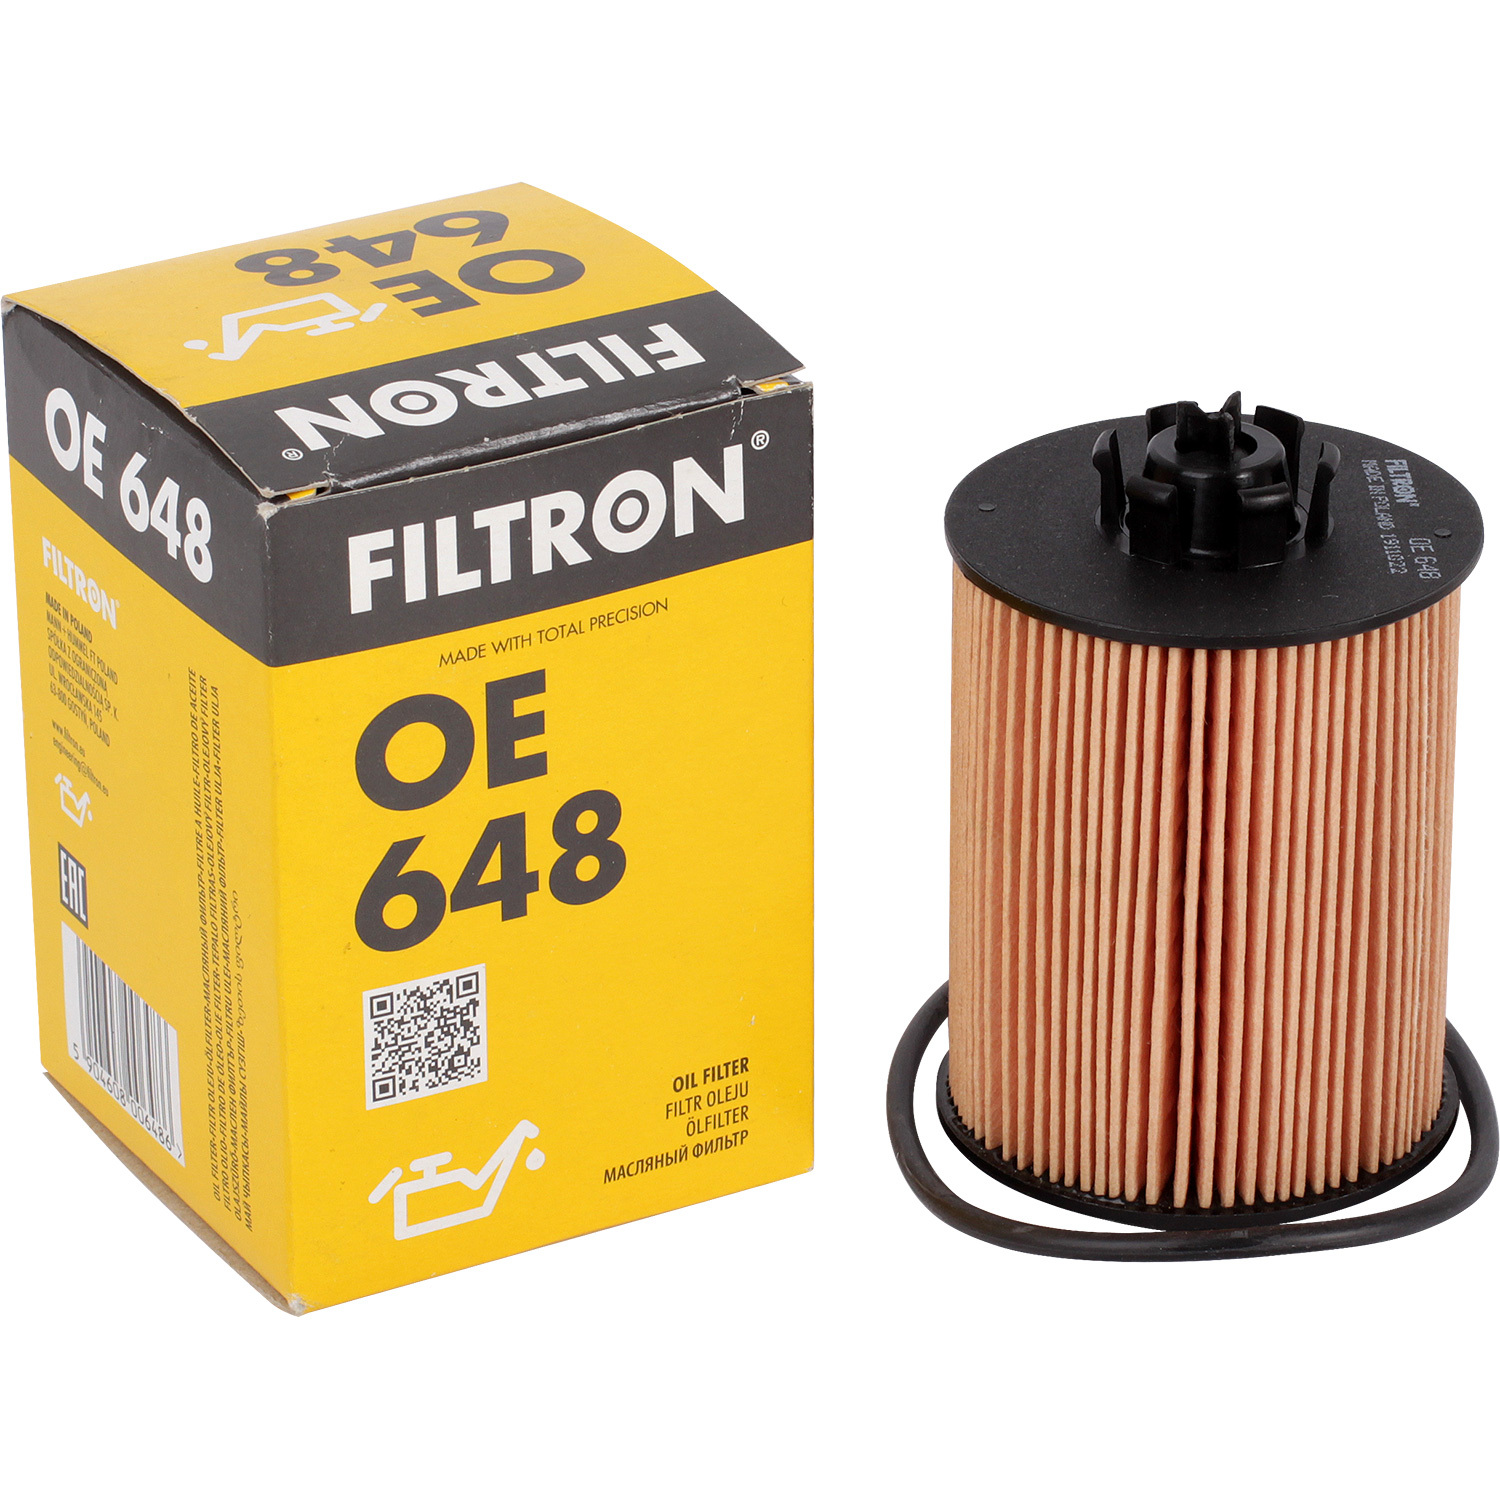 Фильтры Filtron Фильтр масляный Filtron OE648